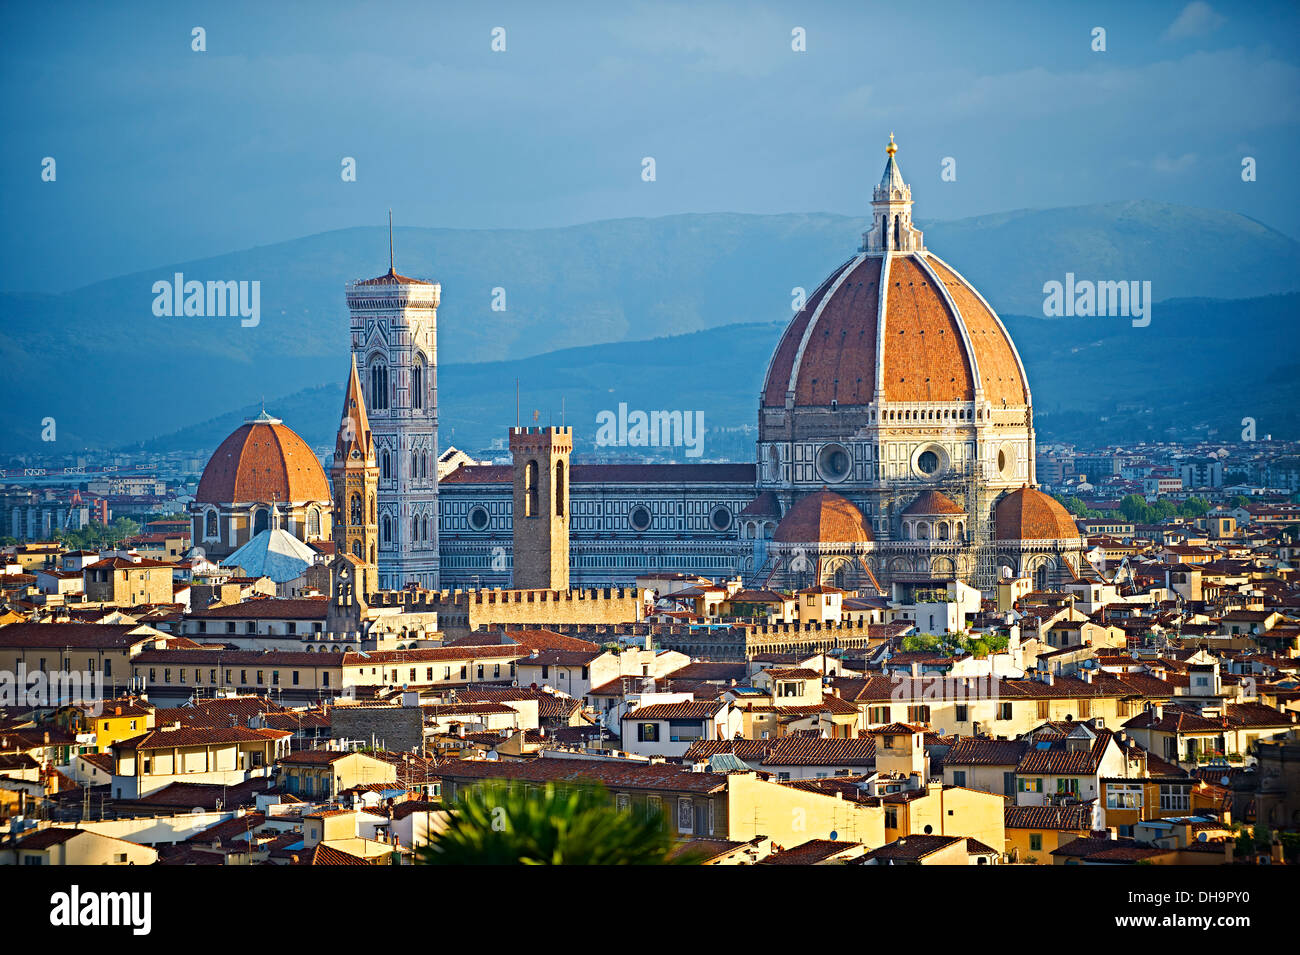 Vista superior del techo de la torre belll y el cimborrio de la Catedral de Florencia, la Basílica de Santa María de la flor, Florencia, Italia. Foto de stock